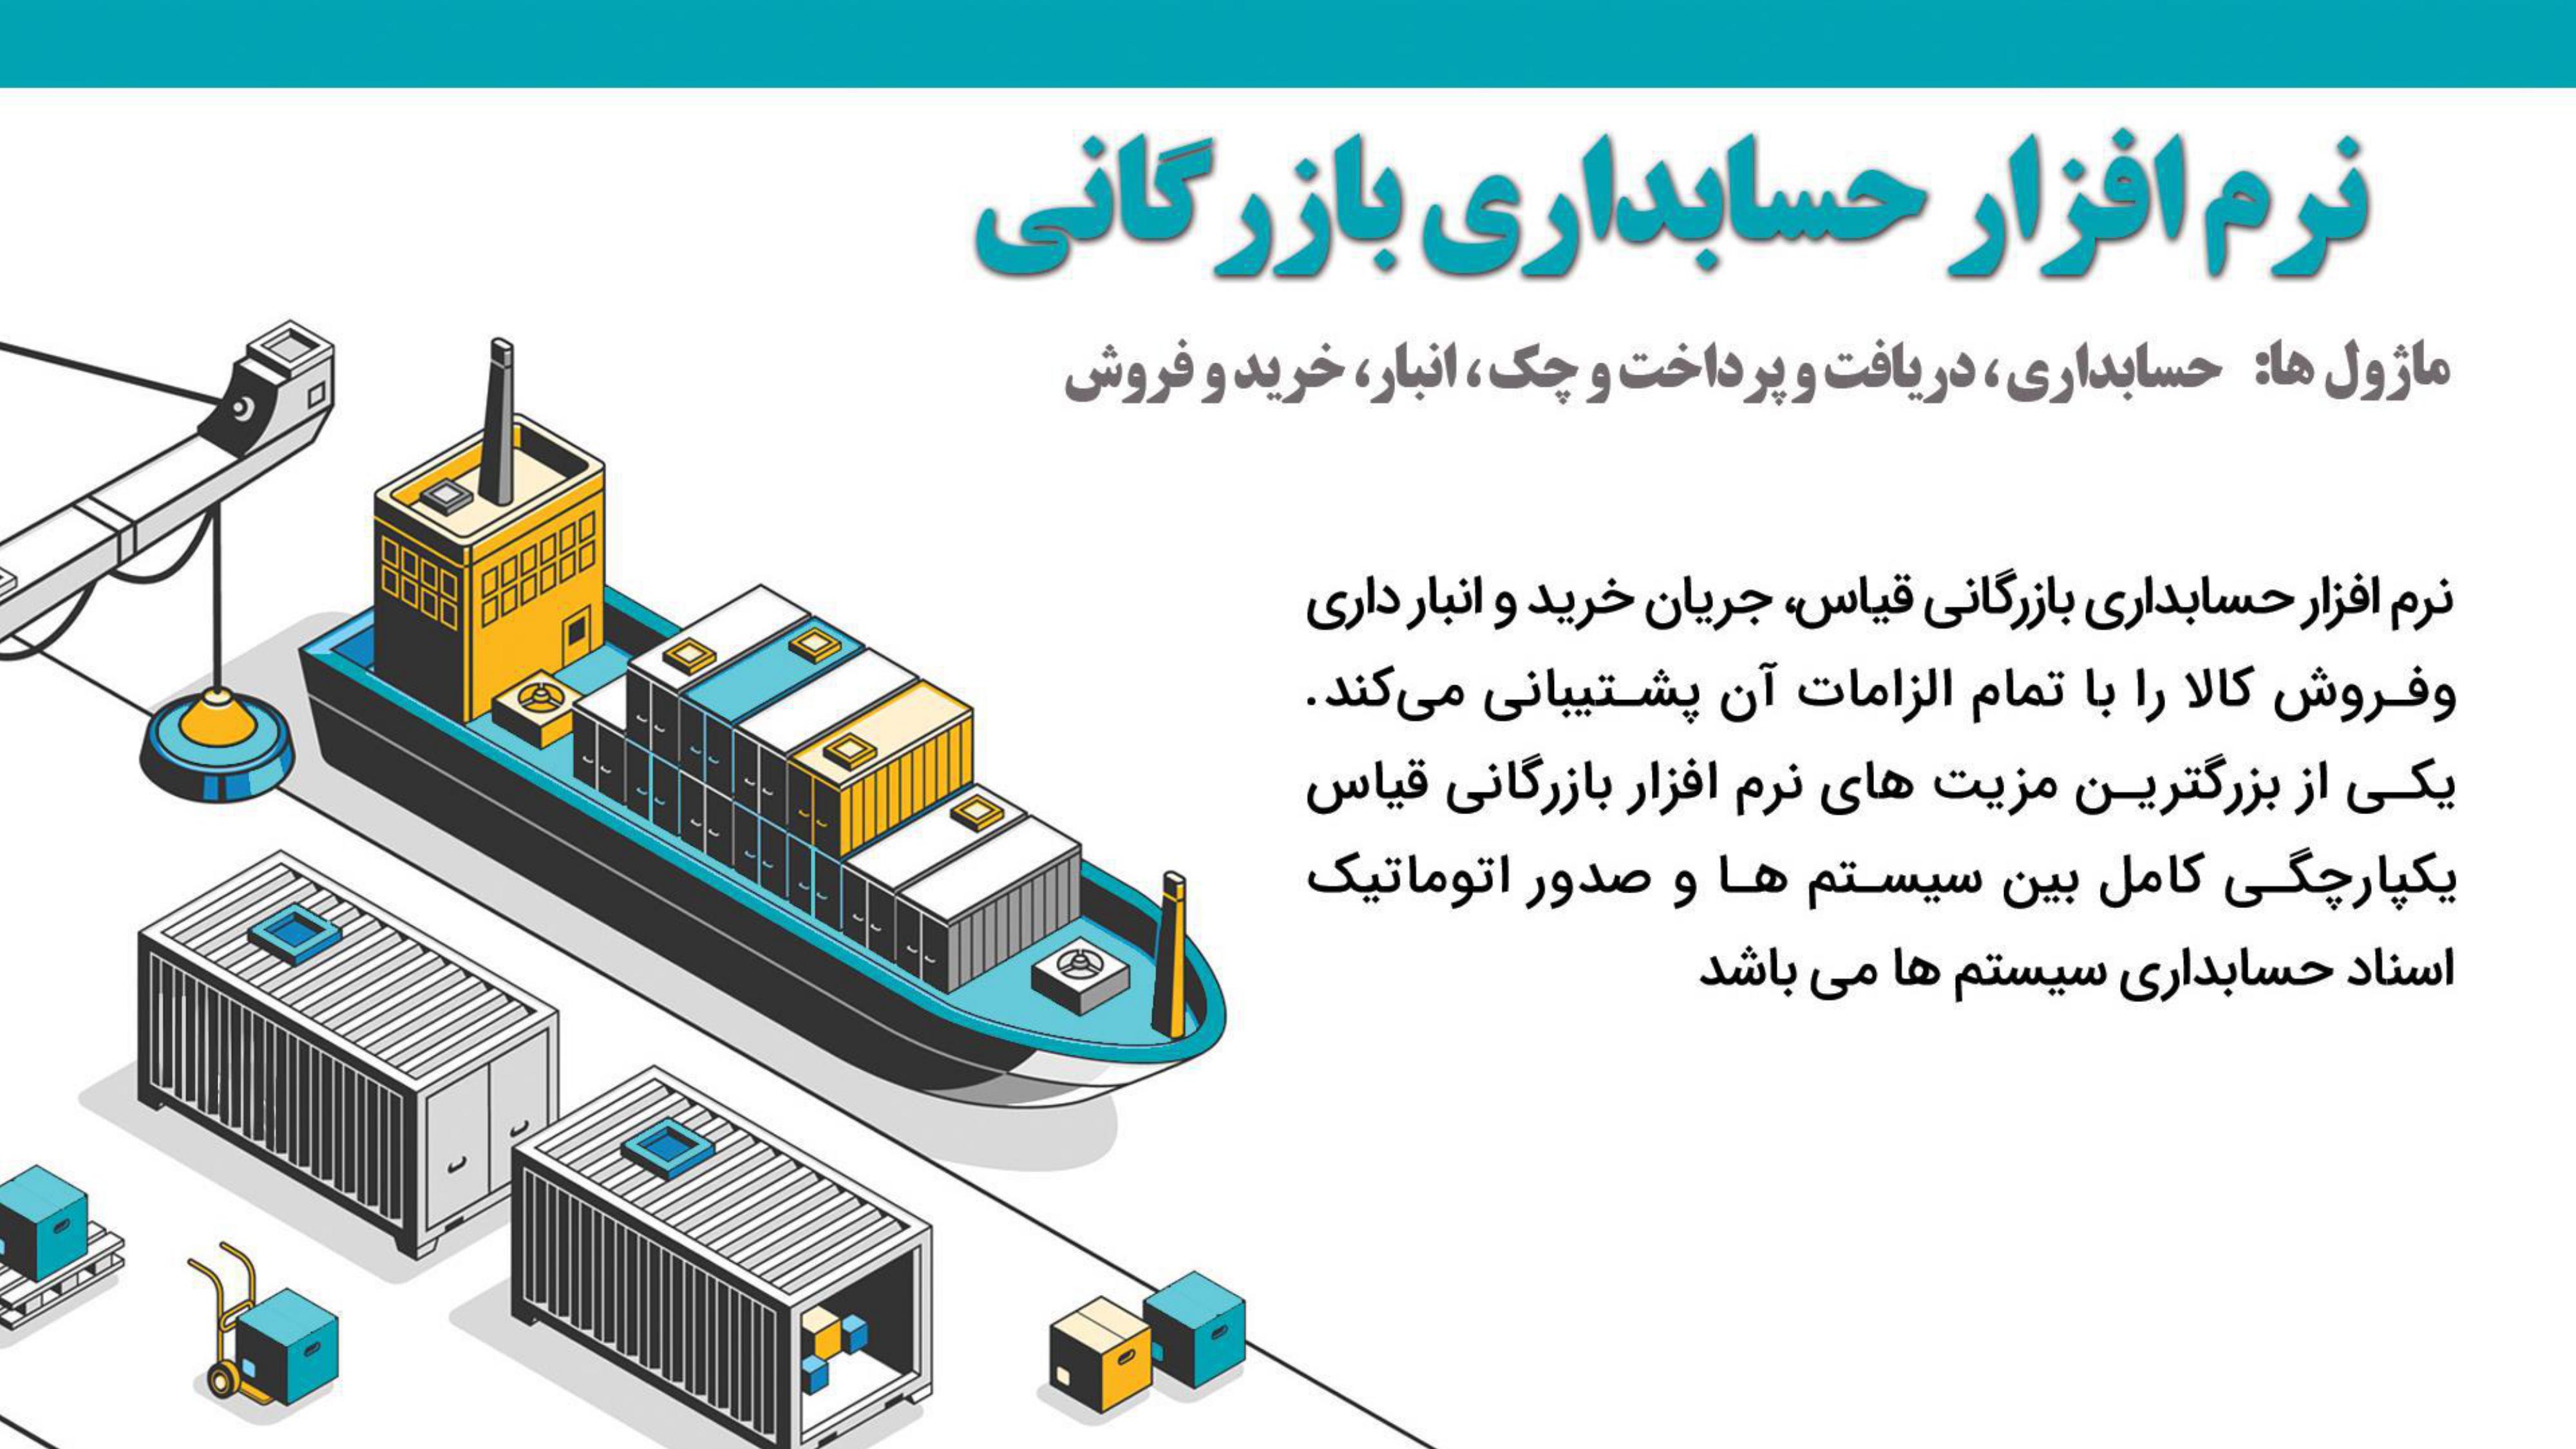 نرم افزار حسابداری بازرگانی قیاس - آذر حسابان - تبریز